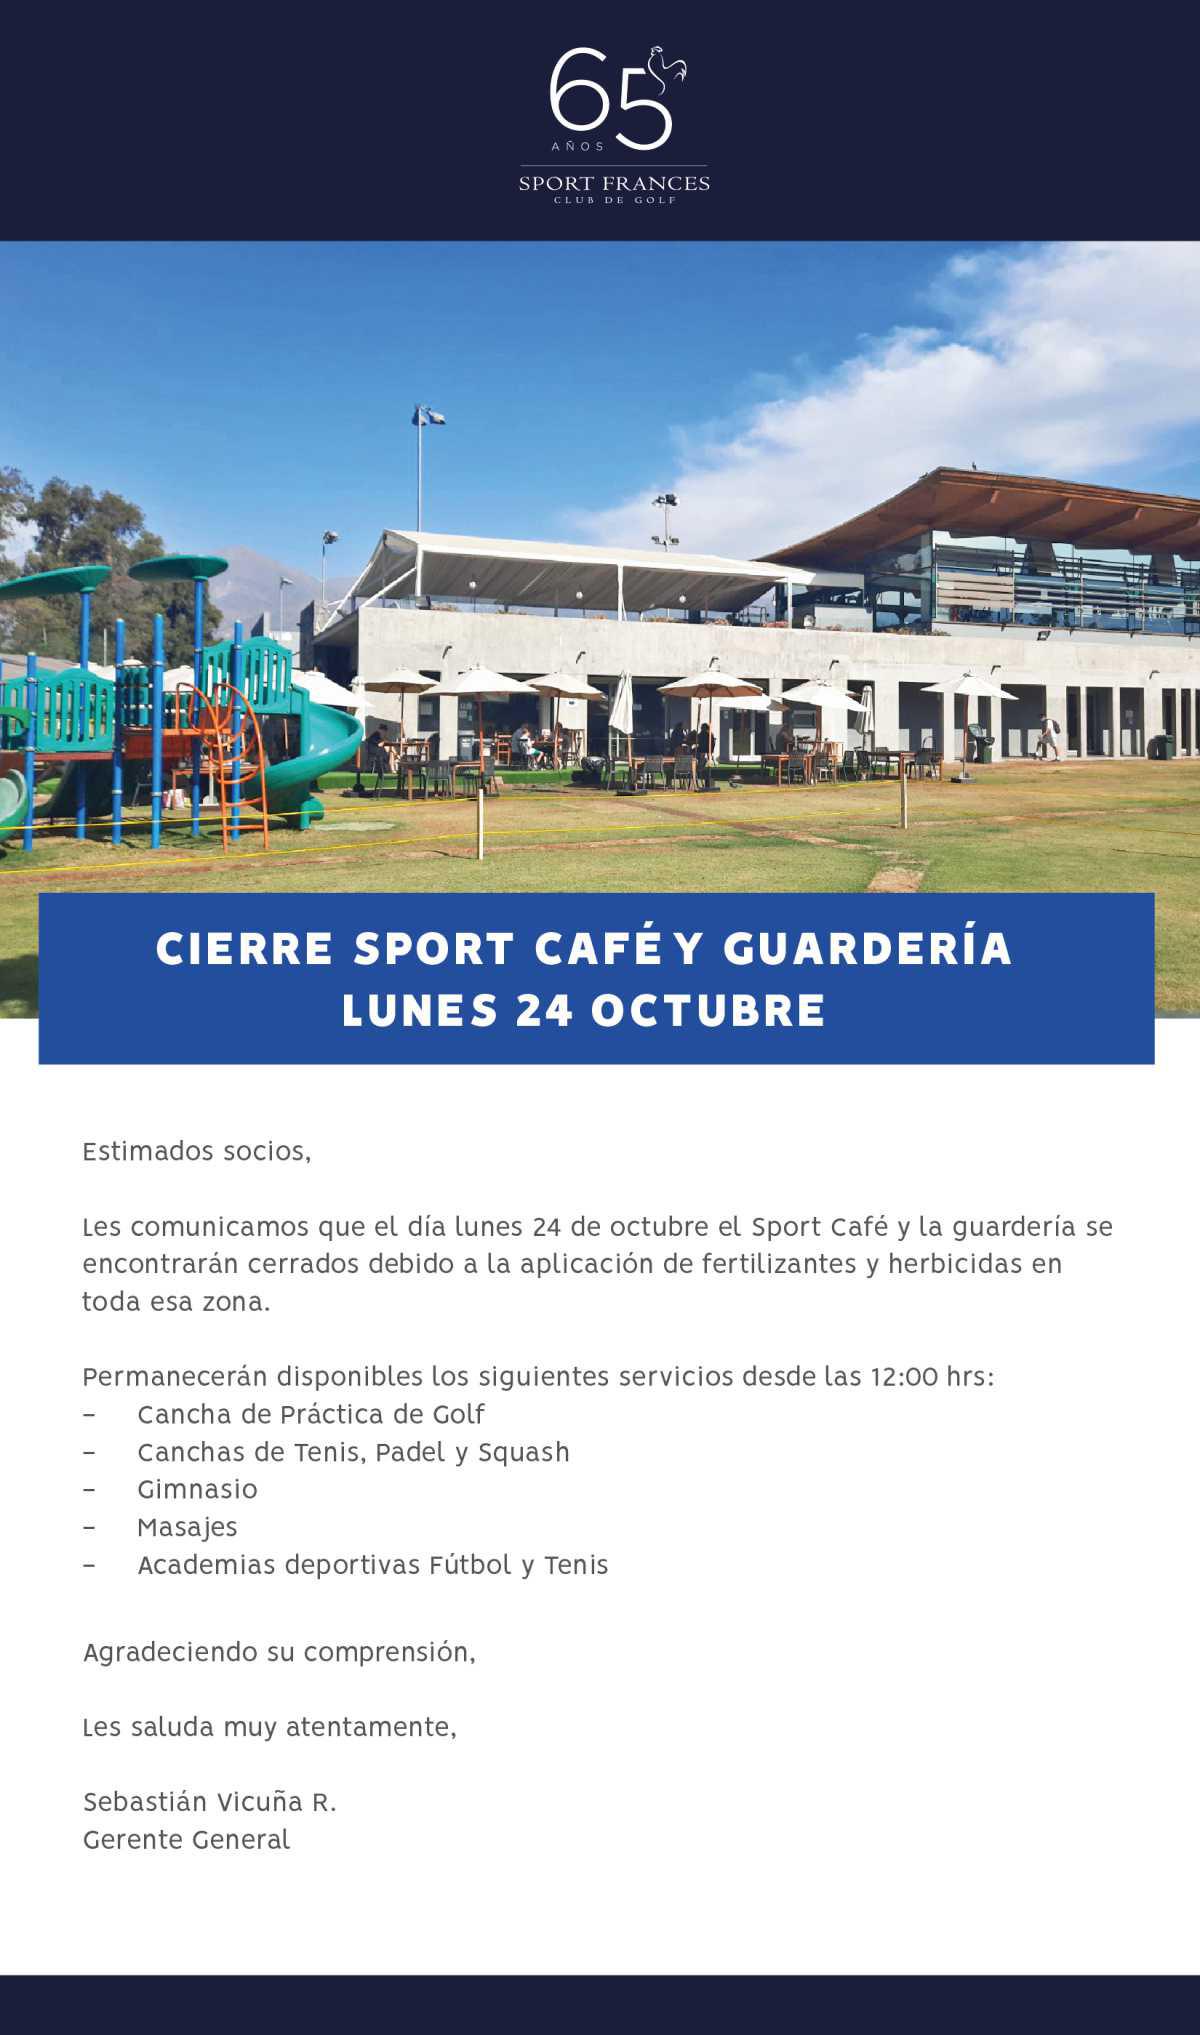 Cierre Sport Café y guardería lunes 24 de octubre